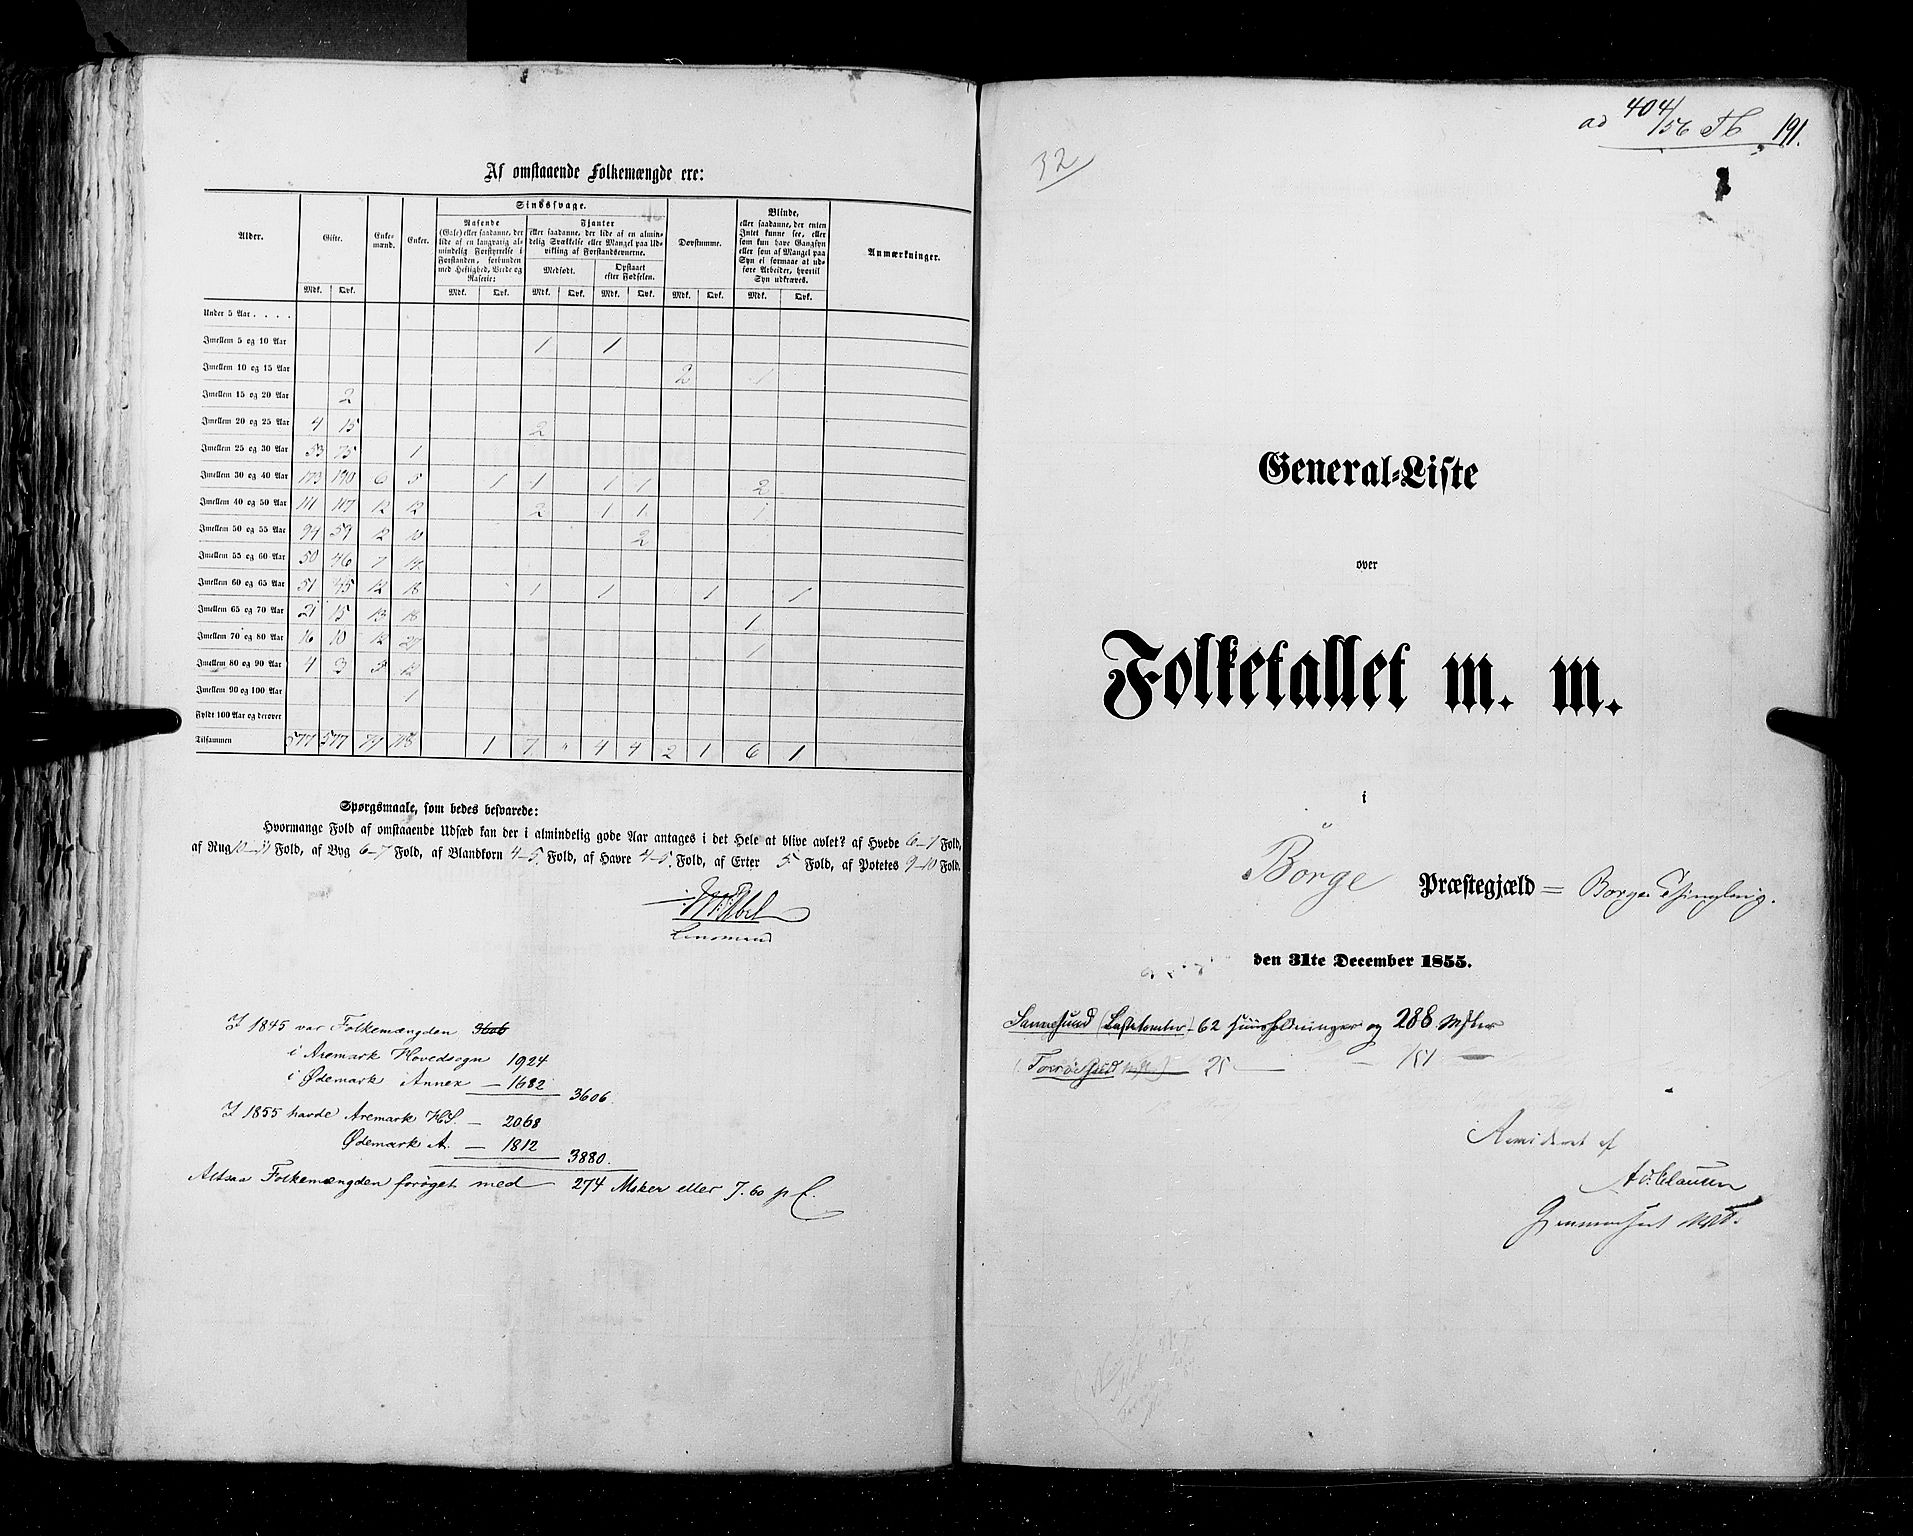 RA, Folketellingen 1855, bind 1: Akershus amt, Smålenenes amt og Hedemarken amt, 1855, s. 191